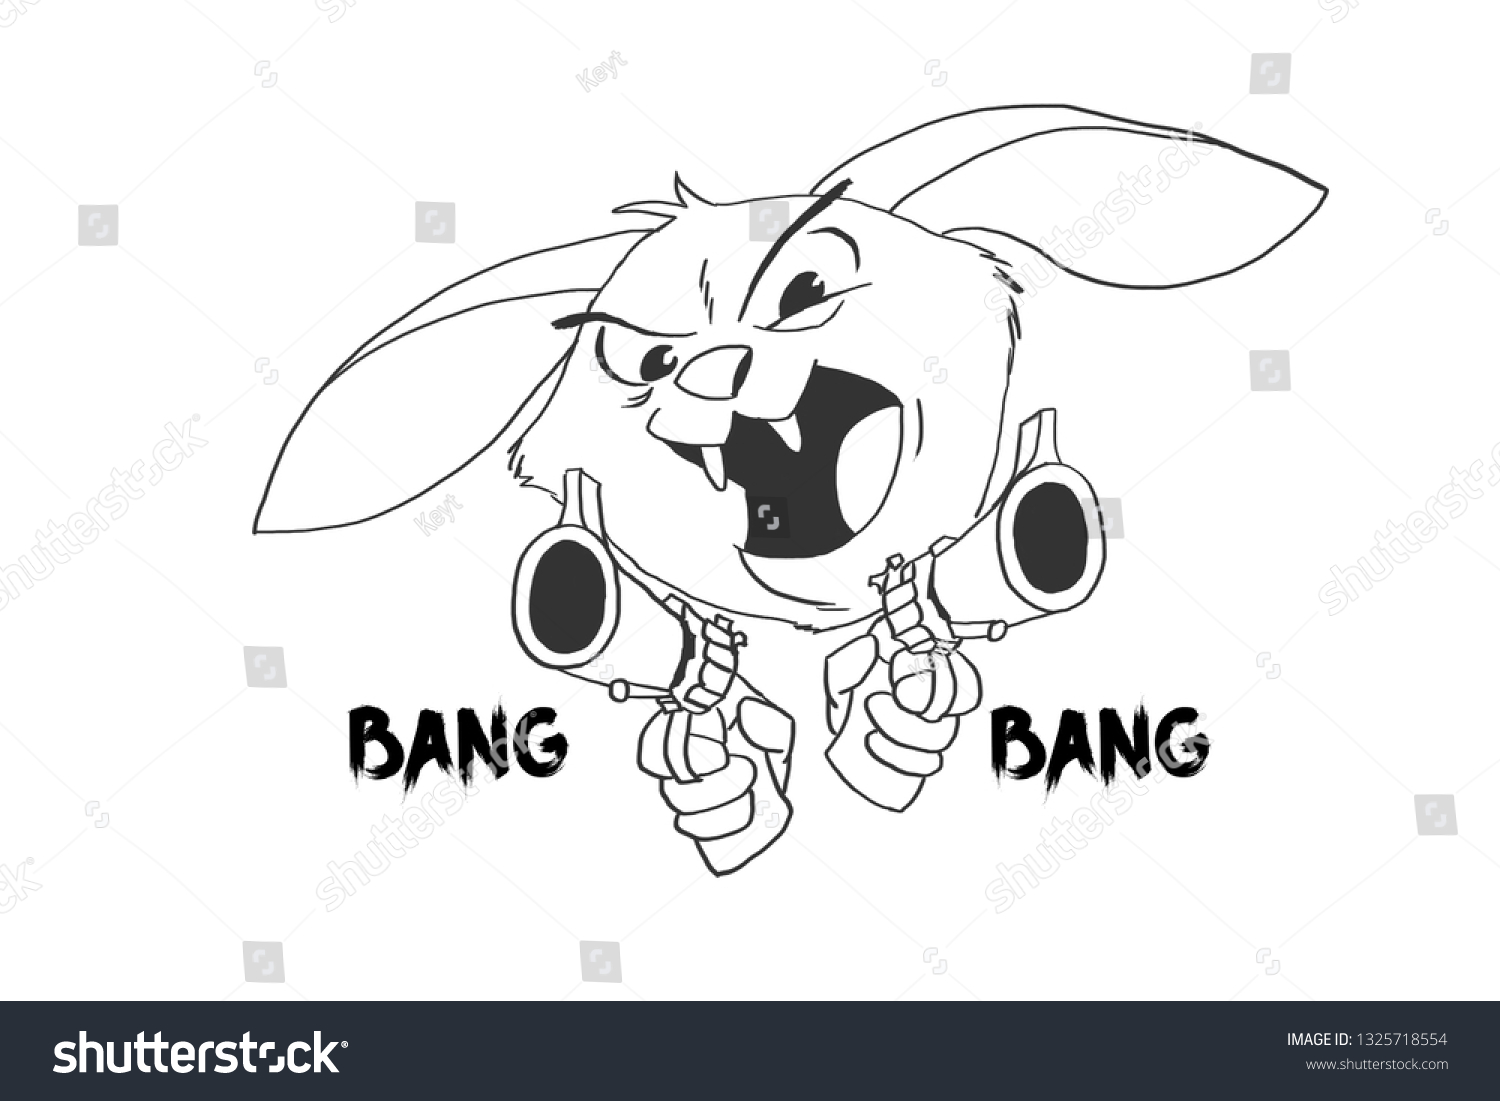 1 006 Imágenes De Bunny Gun Imágenes Fotos Y Vectores De Stock Shutterstock